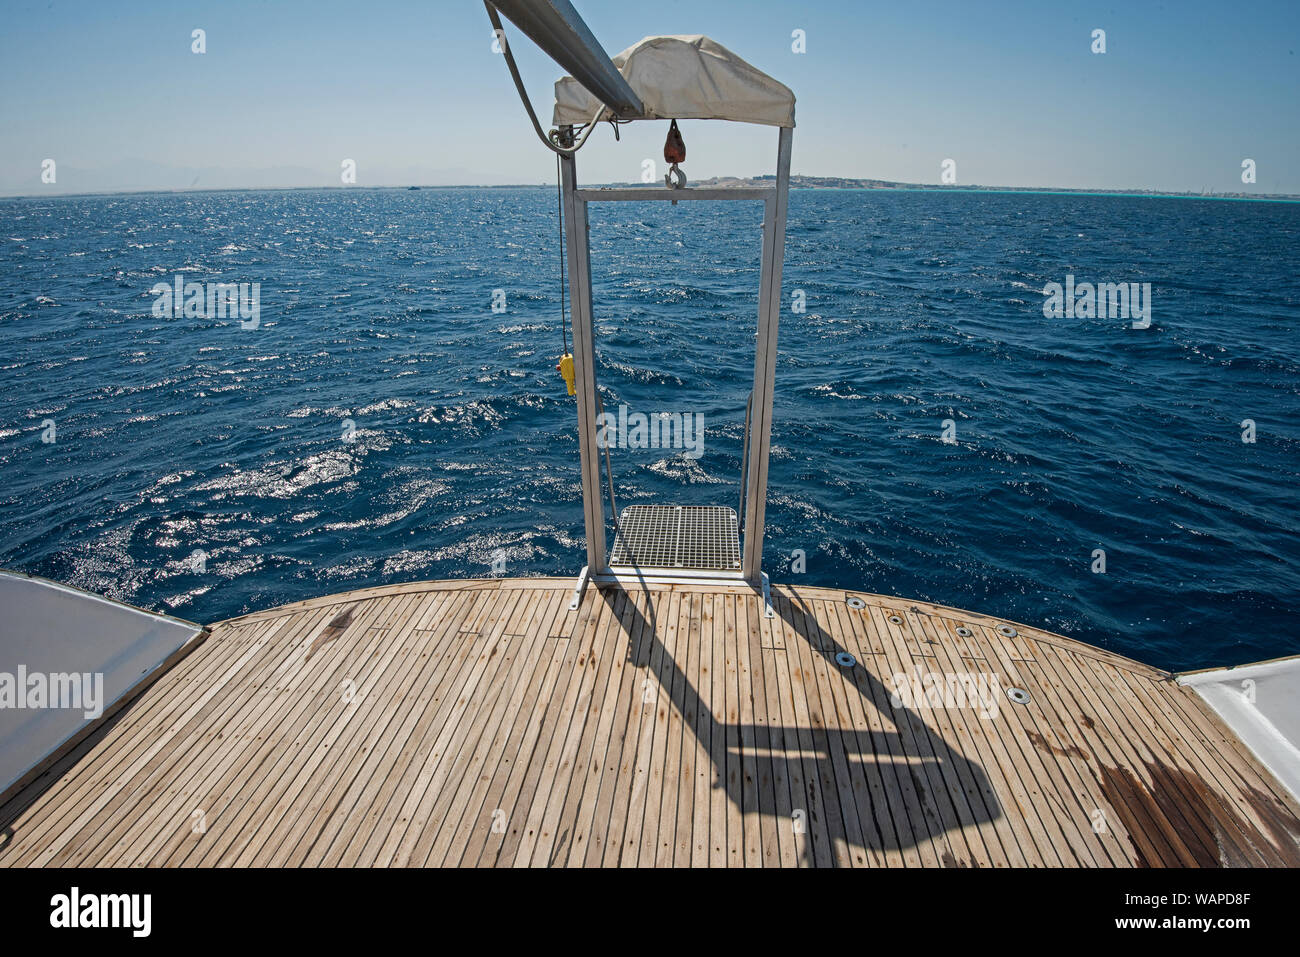 Metal steel diver ascenseur à l'arrière pont en teck d'un grand yacht de luxe la voile sur un océan tropical Banque D'Images